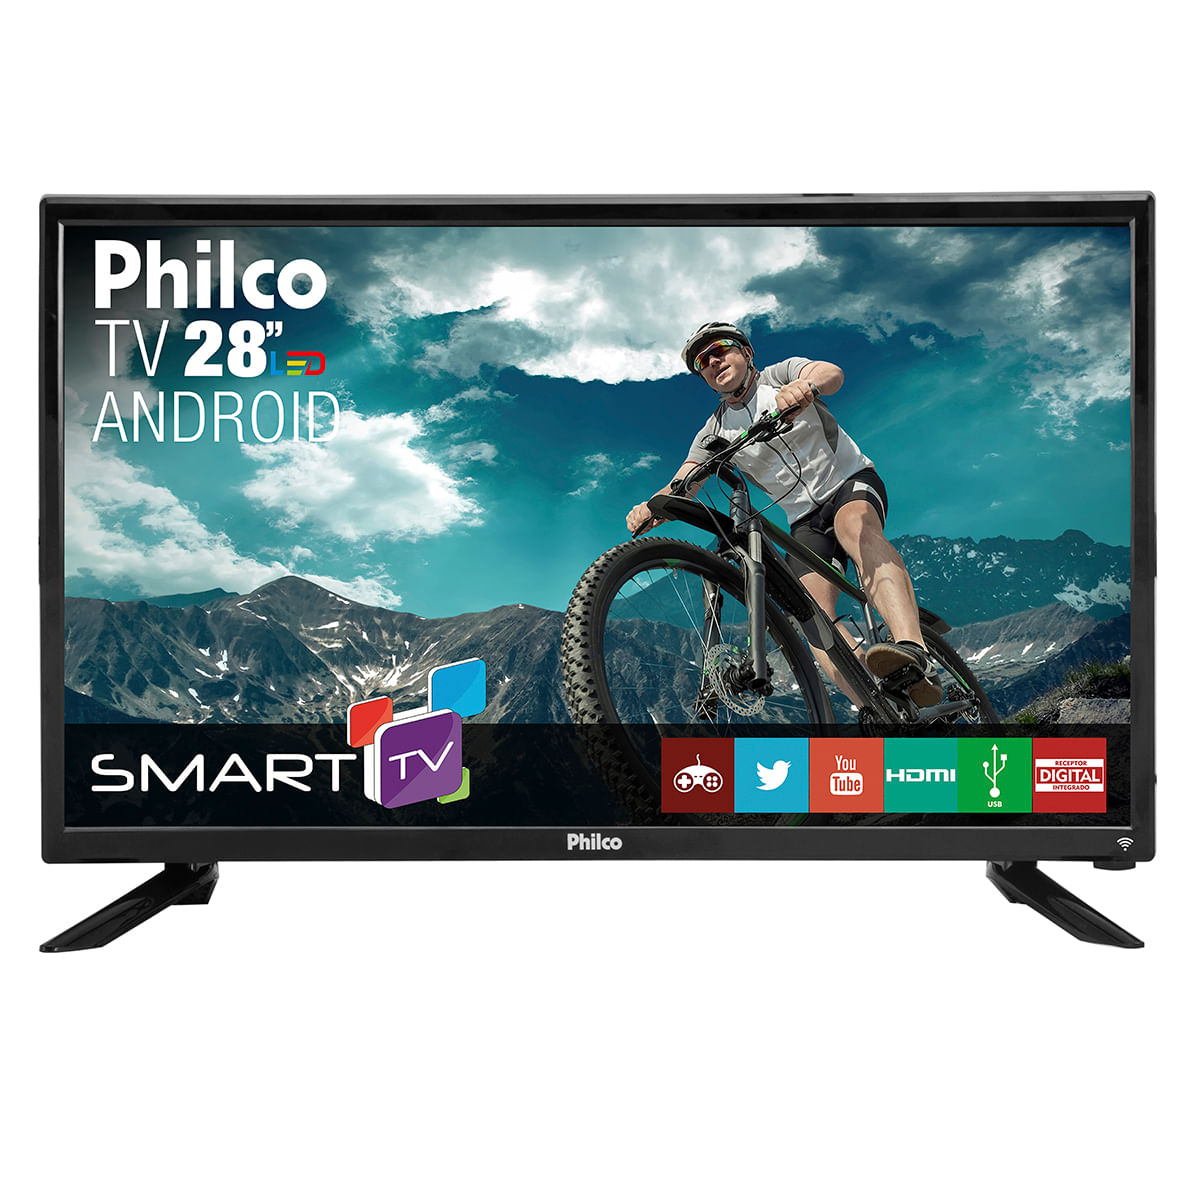 Smart TV Philco Led 28 PH28N91DSGWA  Philco - Loja Oficial Philco -  Eletrodomésticos, Acessórios e Eletroportáteis